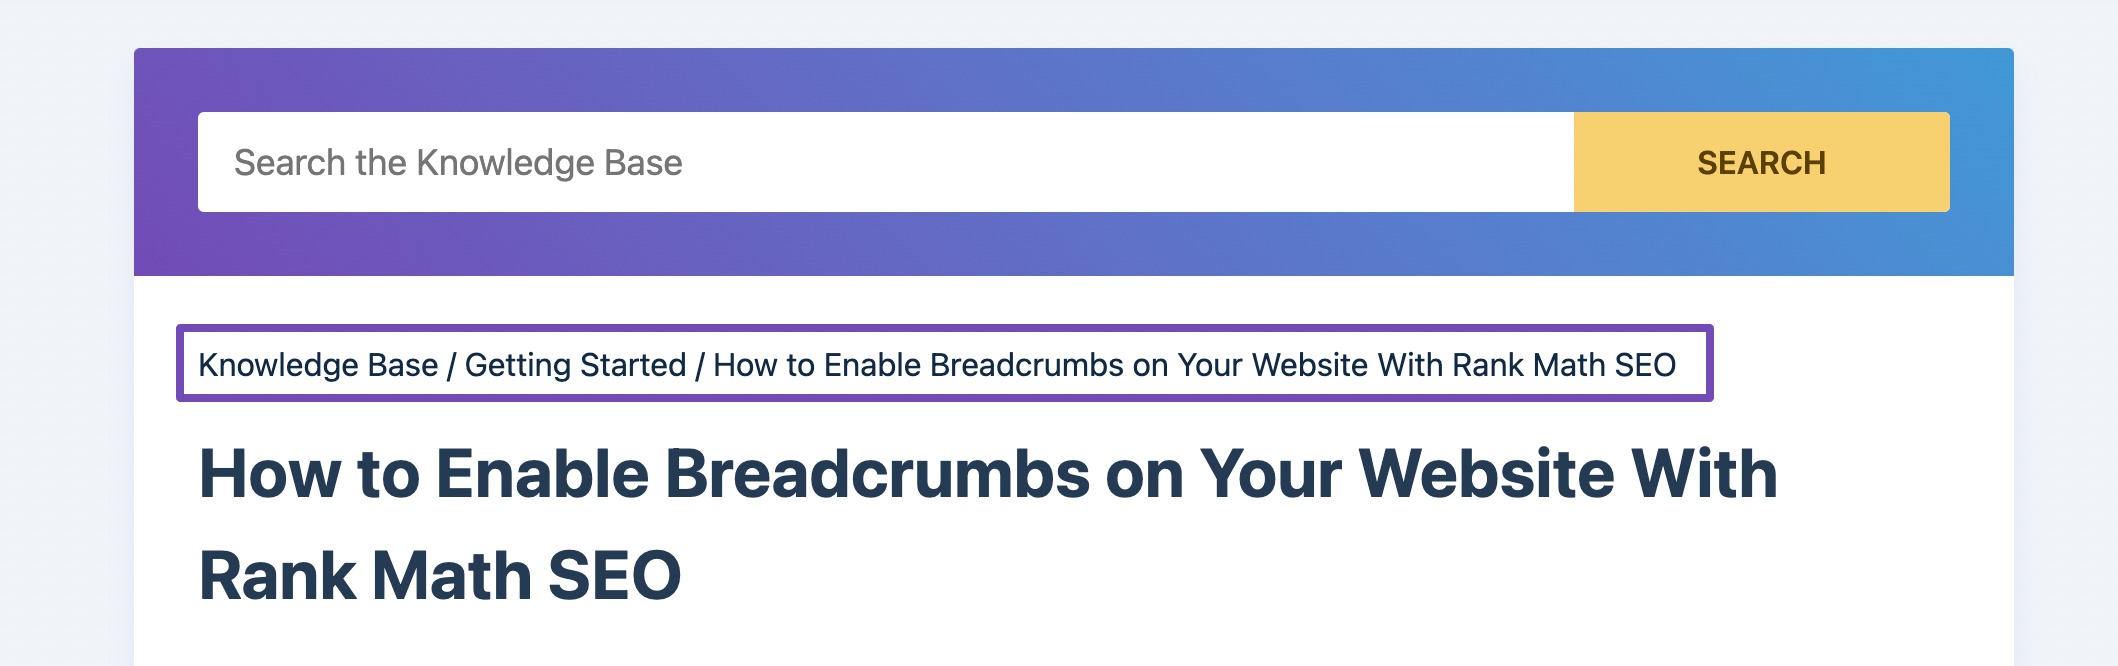 Example of breadcrumbs